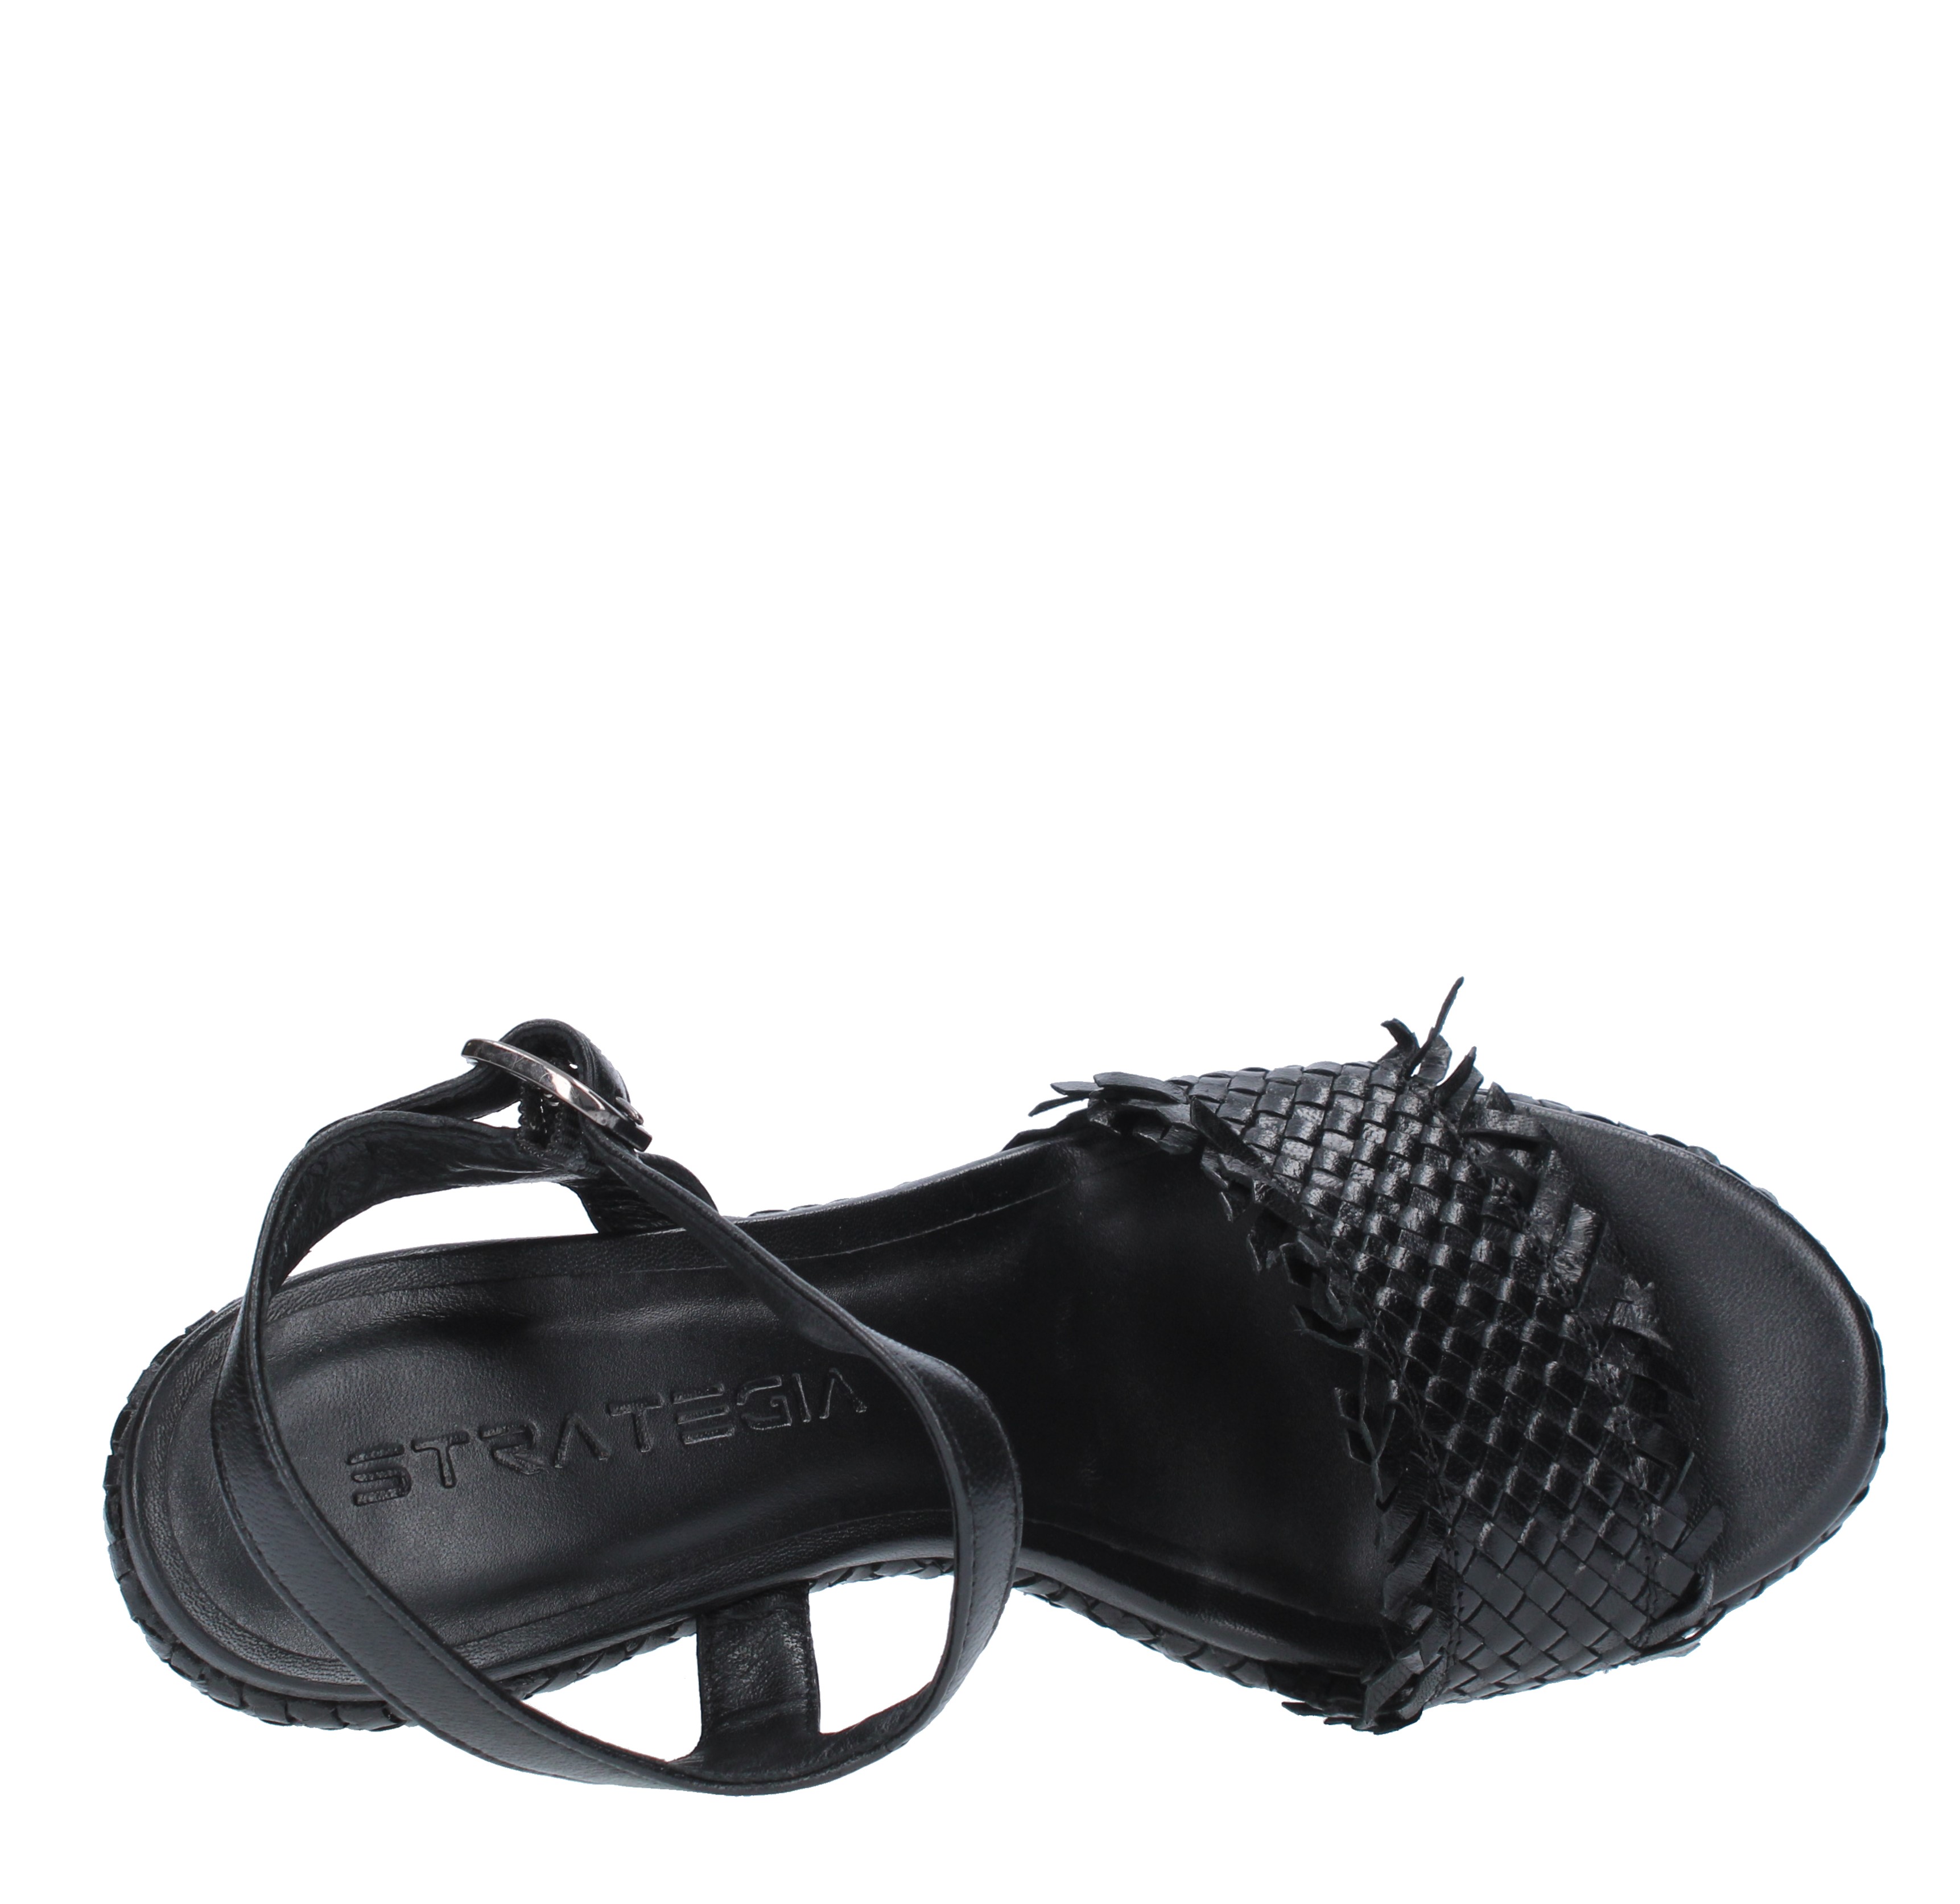 Sandali con zeppa pelle intrecciata - STRATEGIA - Ginevra calzature